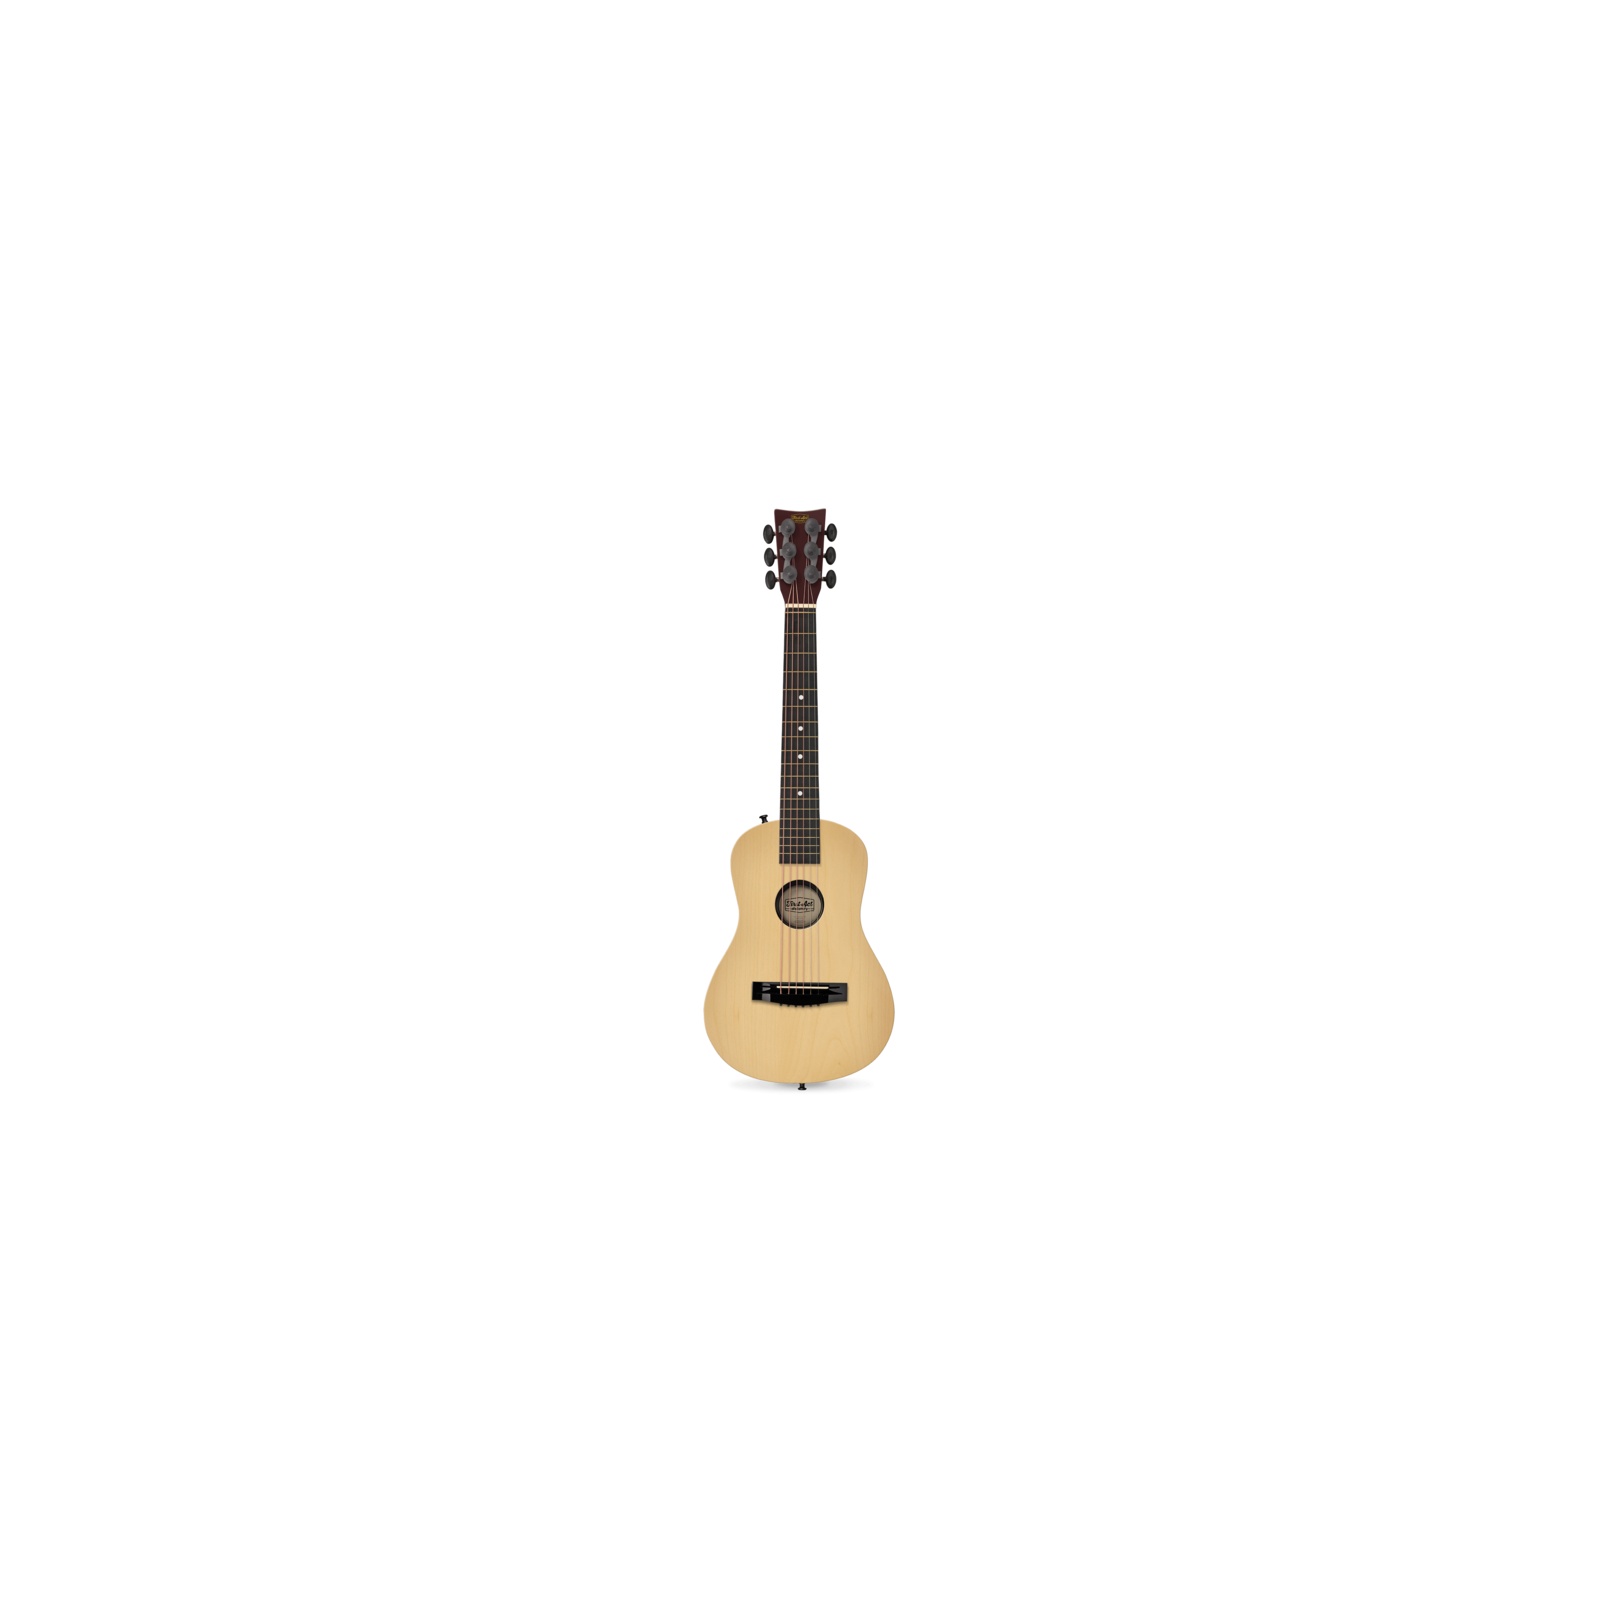 Музыкальная игрушка First act Акустическая гитара DISCOVERY - NATURA 30" (FG1106)